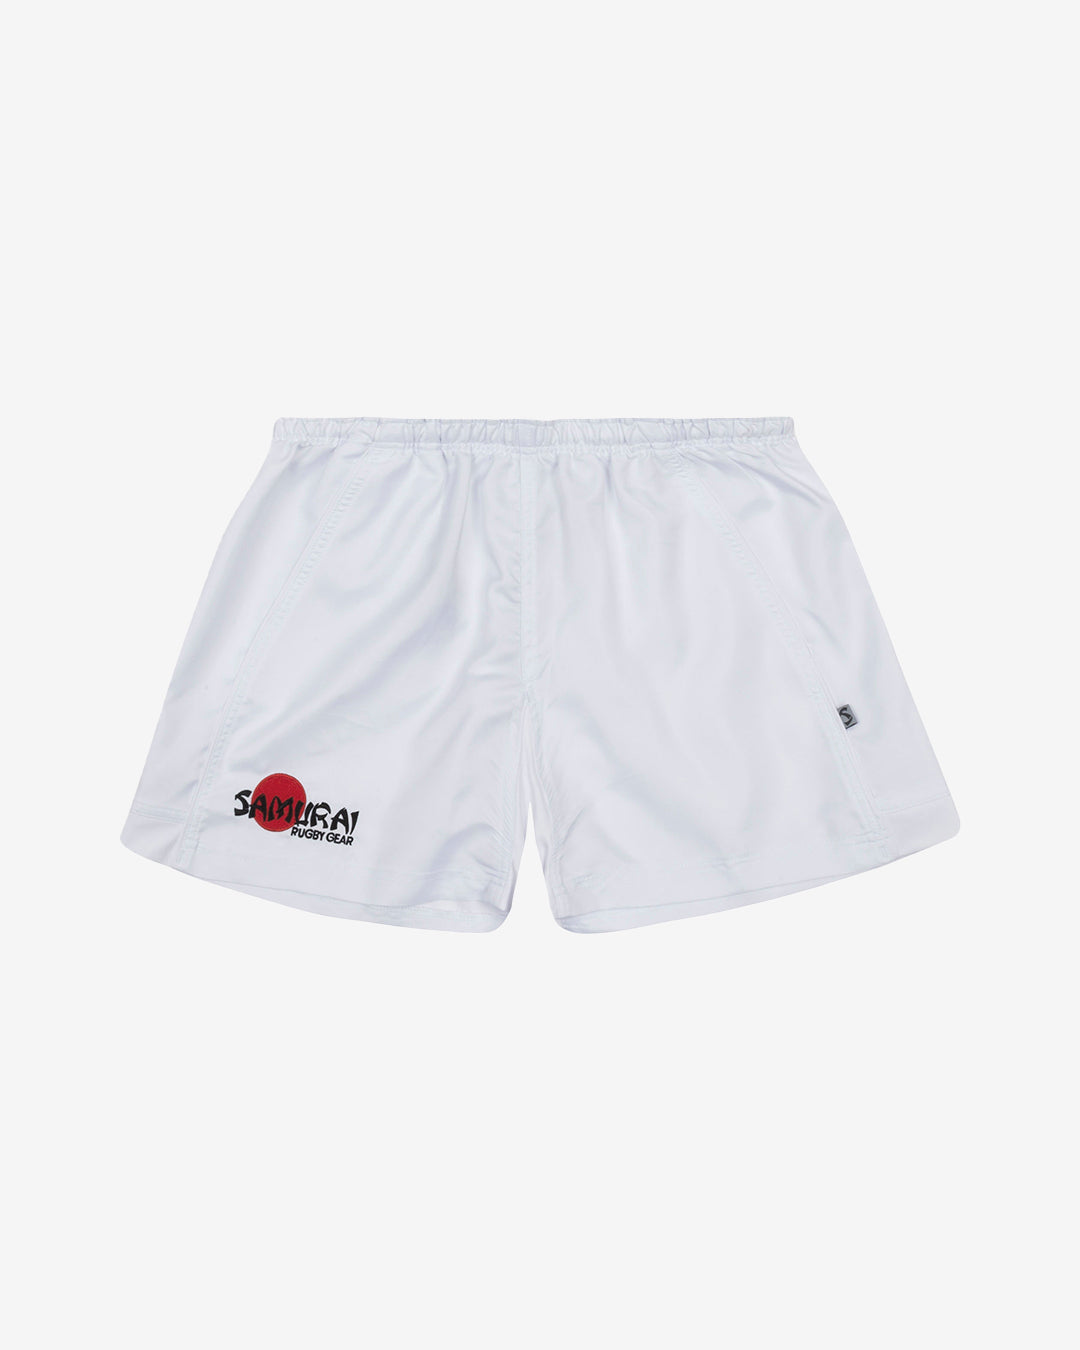 Hc: 9605 - Premier Shorts - White